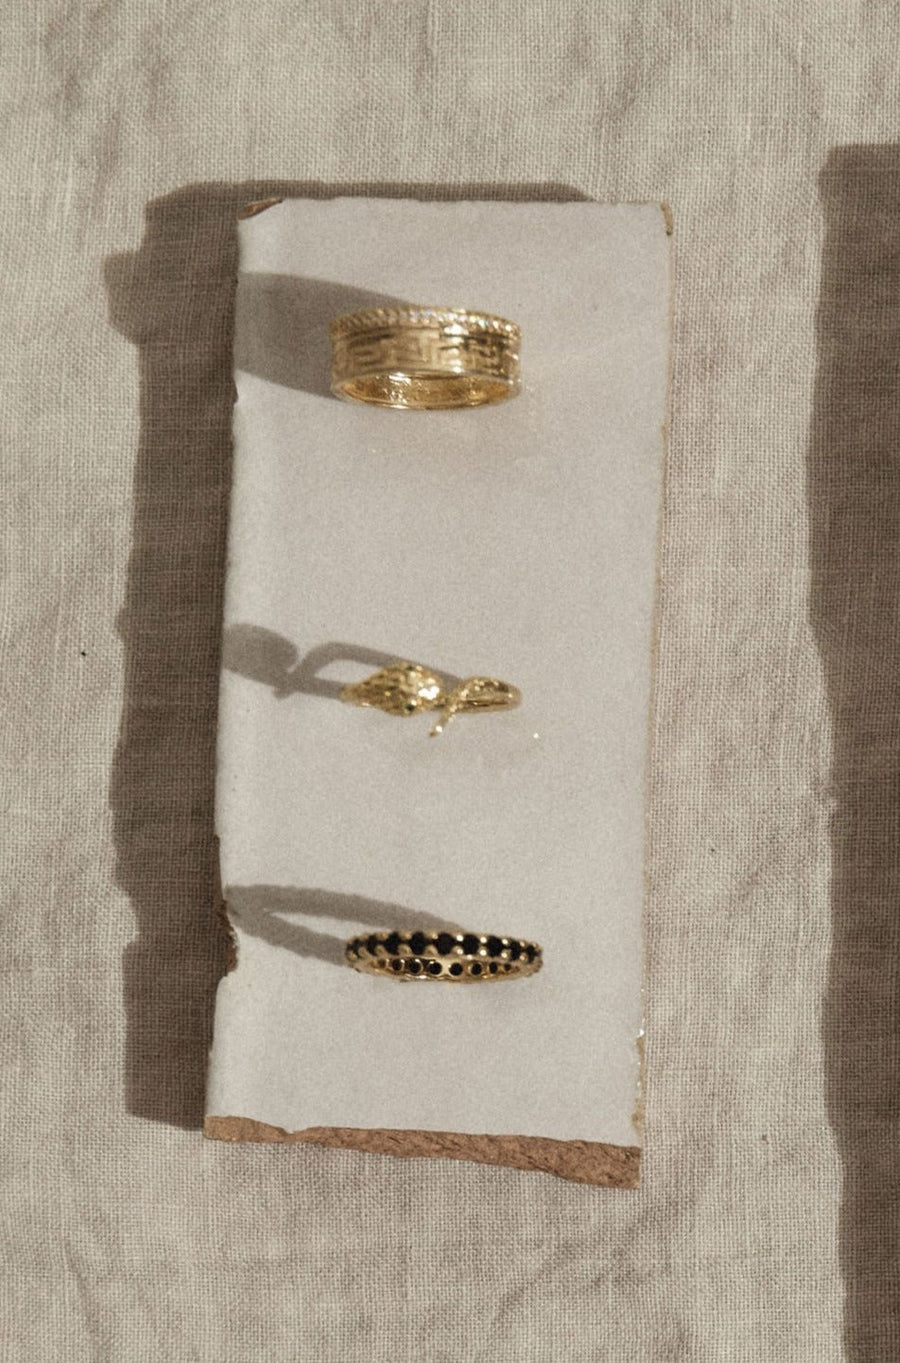 Dona Italia Jewelry Aztec Ring